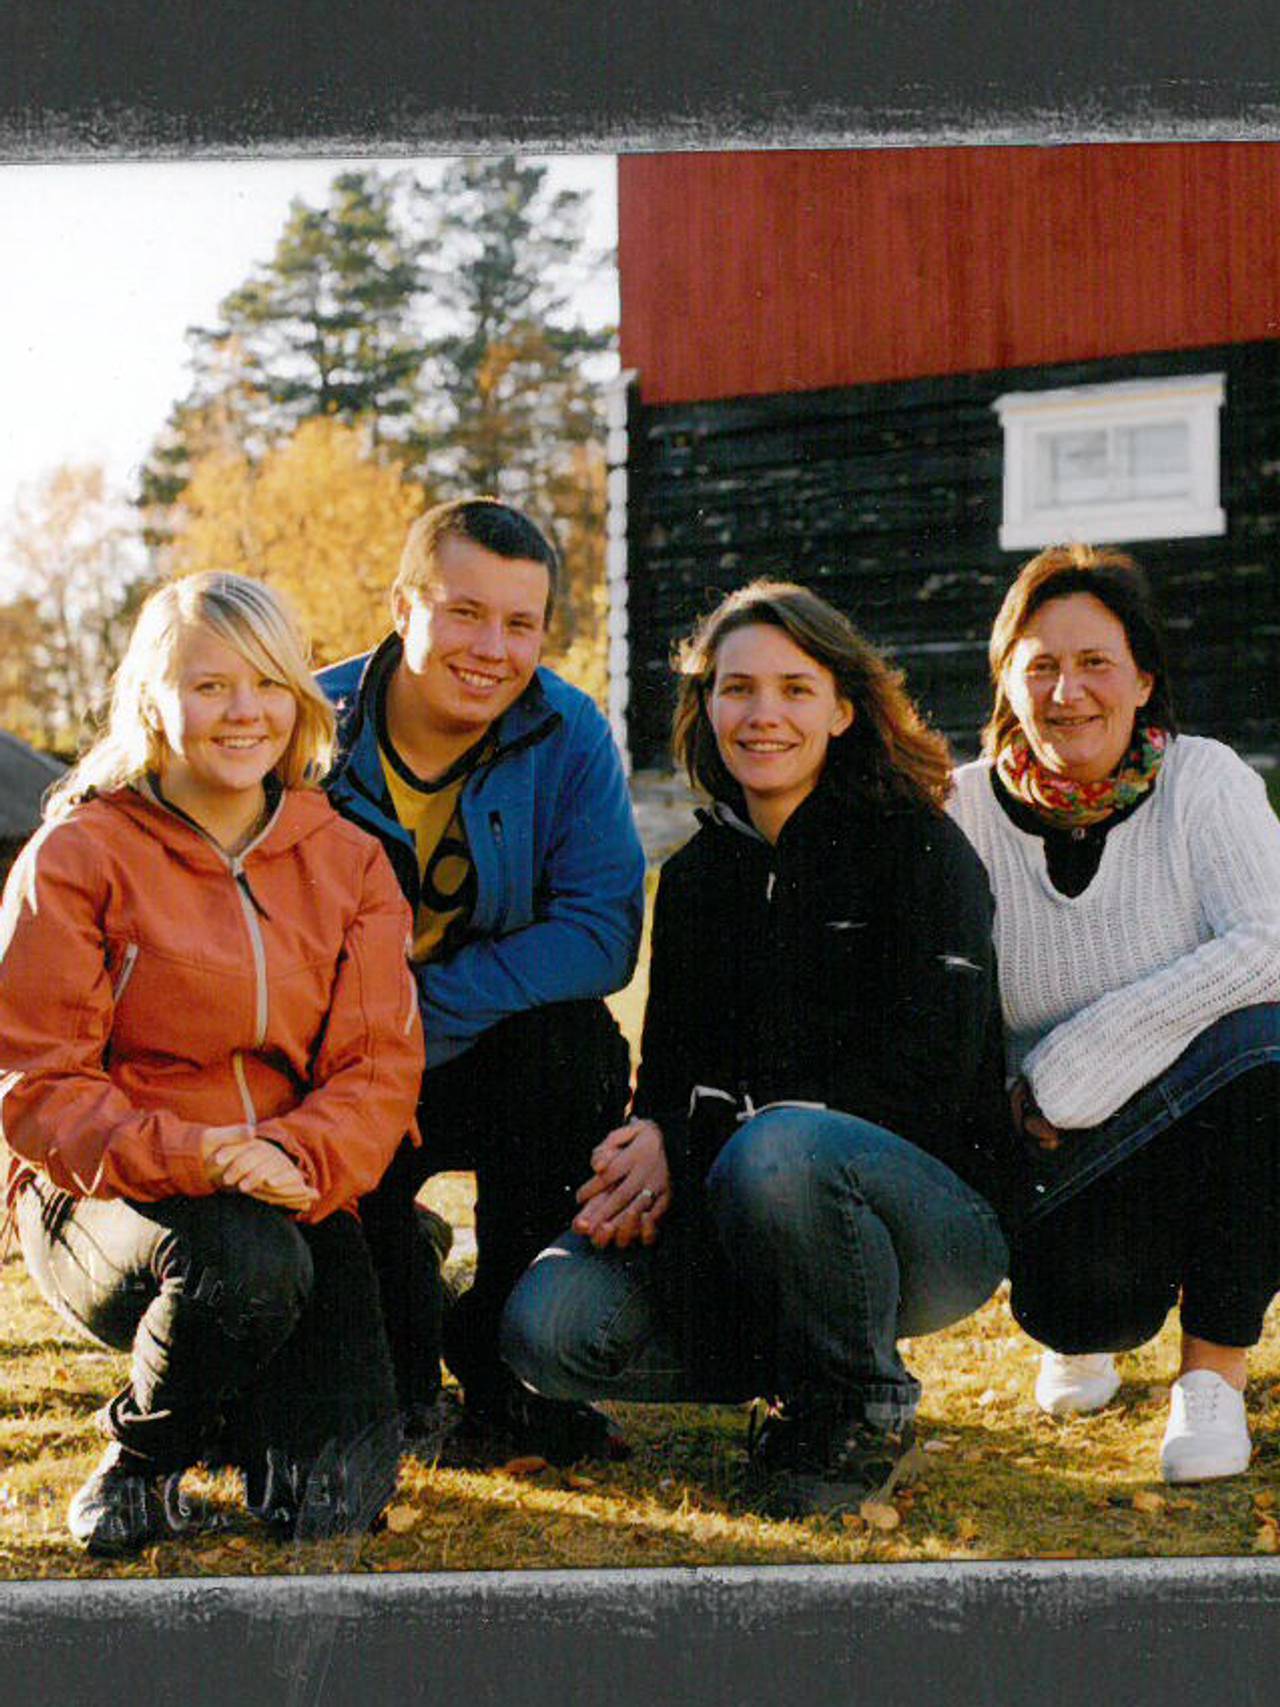  Ann Kristin, Lars Emil, Vaino og Mona.